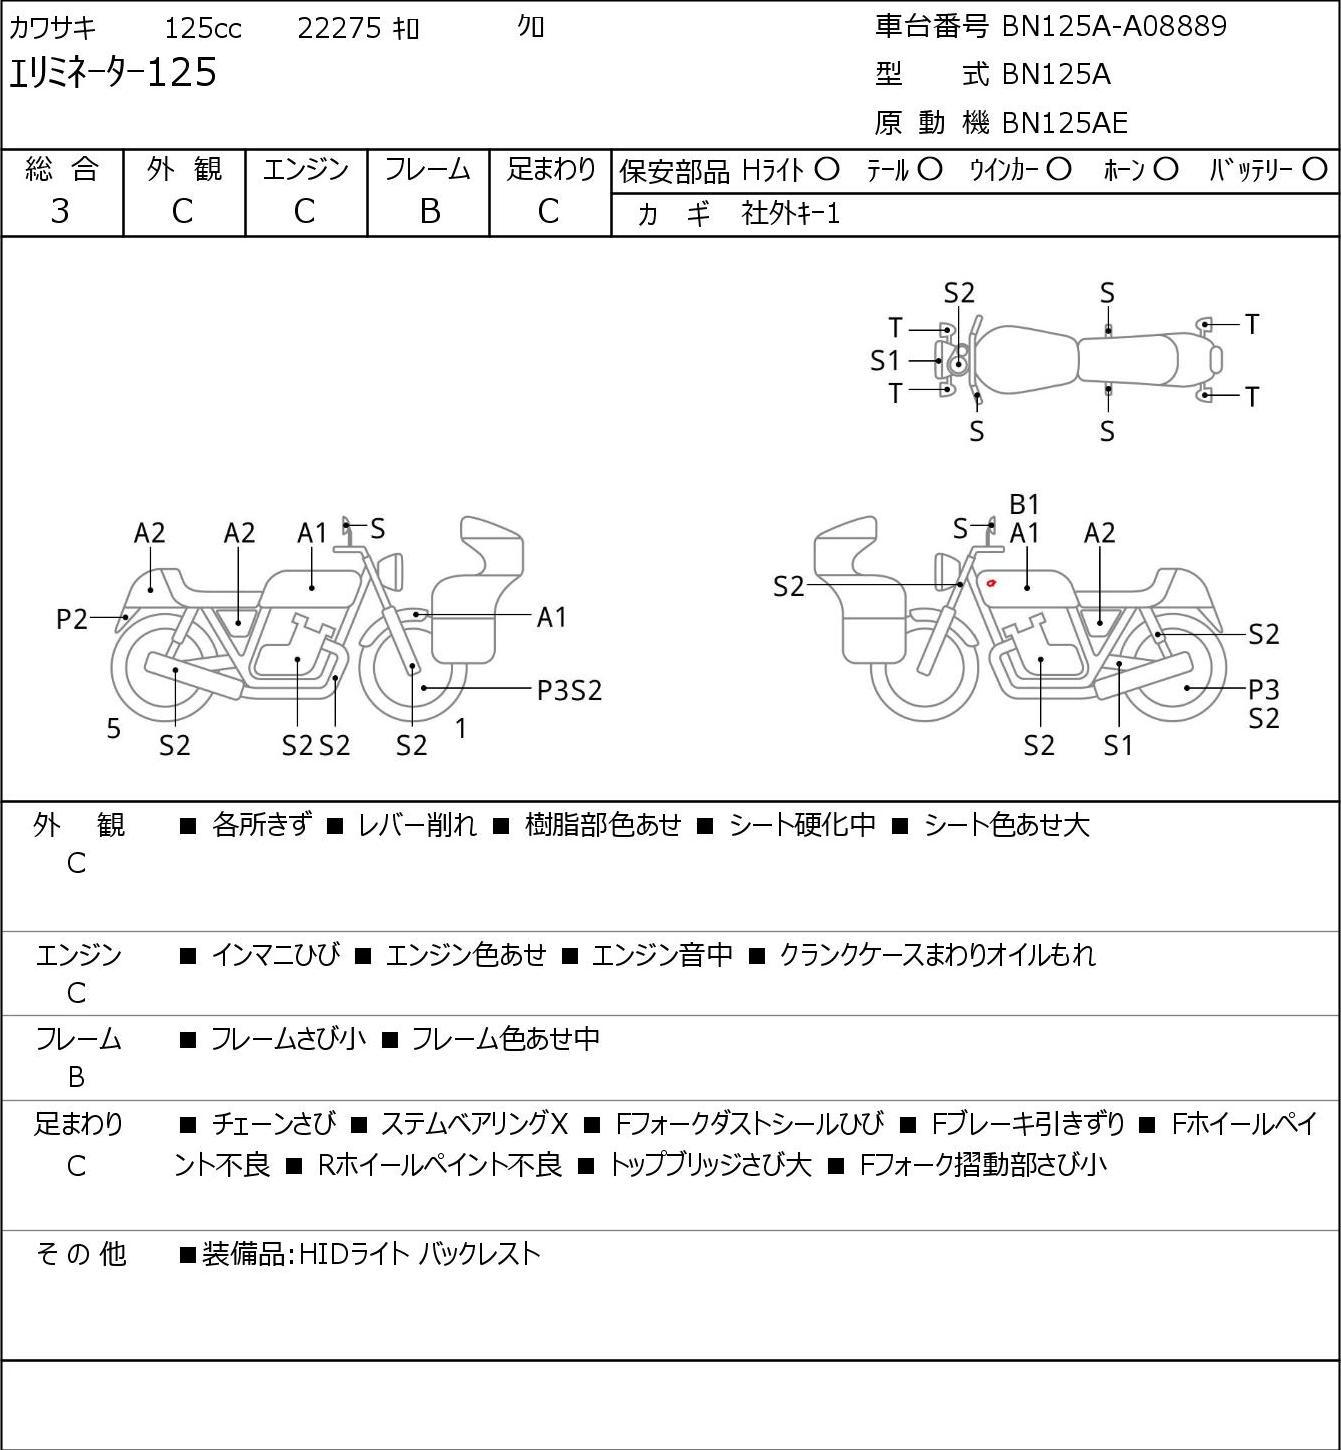 Kawasaki ELIMINATOR 125 BN125A г. 22276